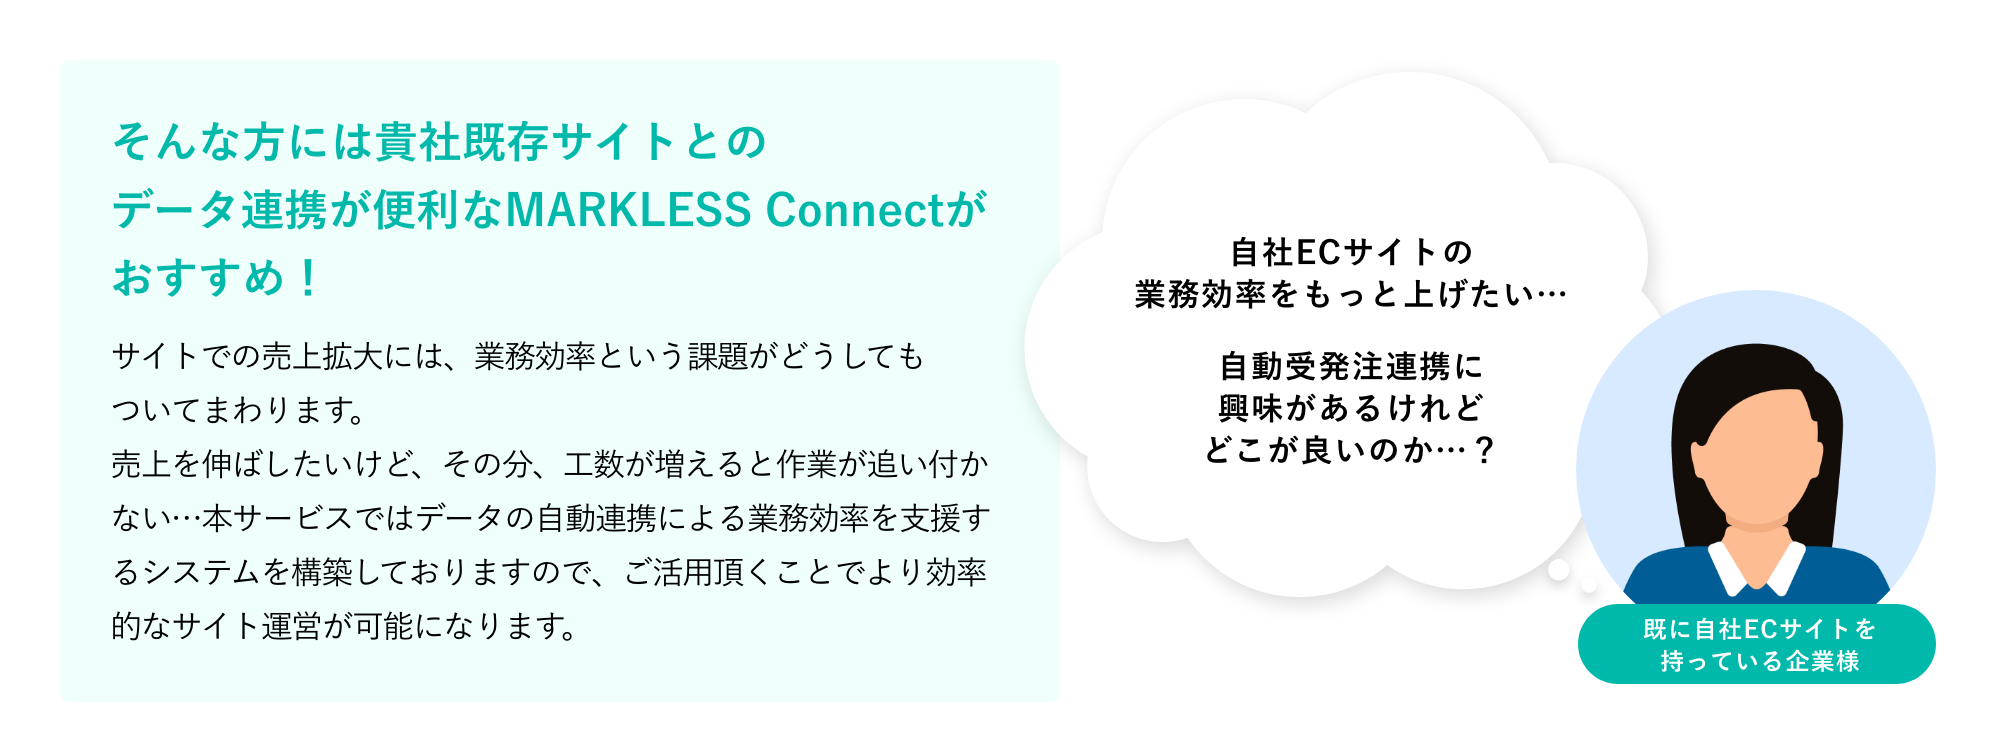 貴社既存サイトとのデータ連携が便利なMARKLESS Connect